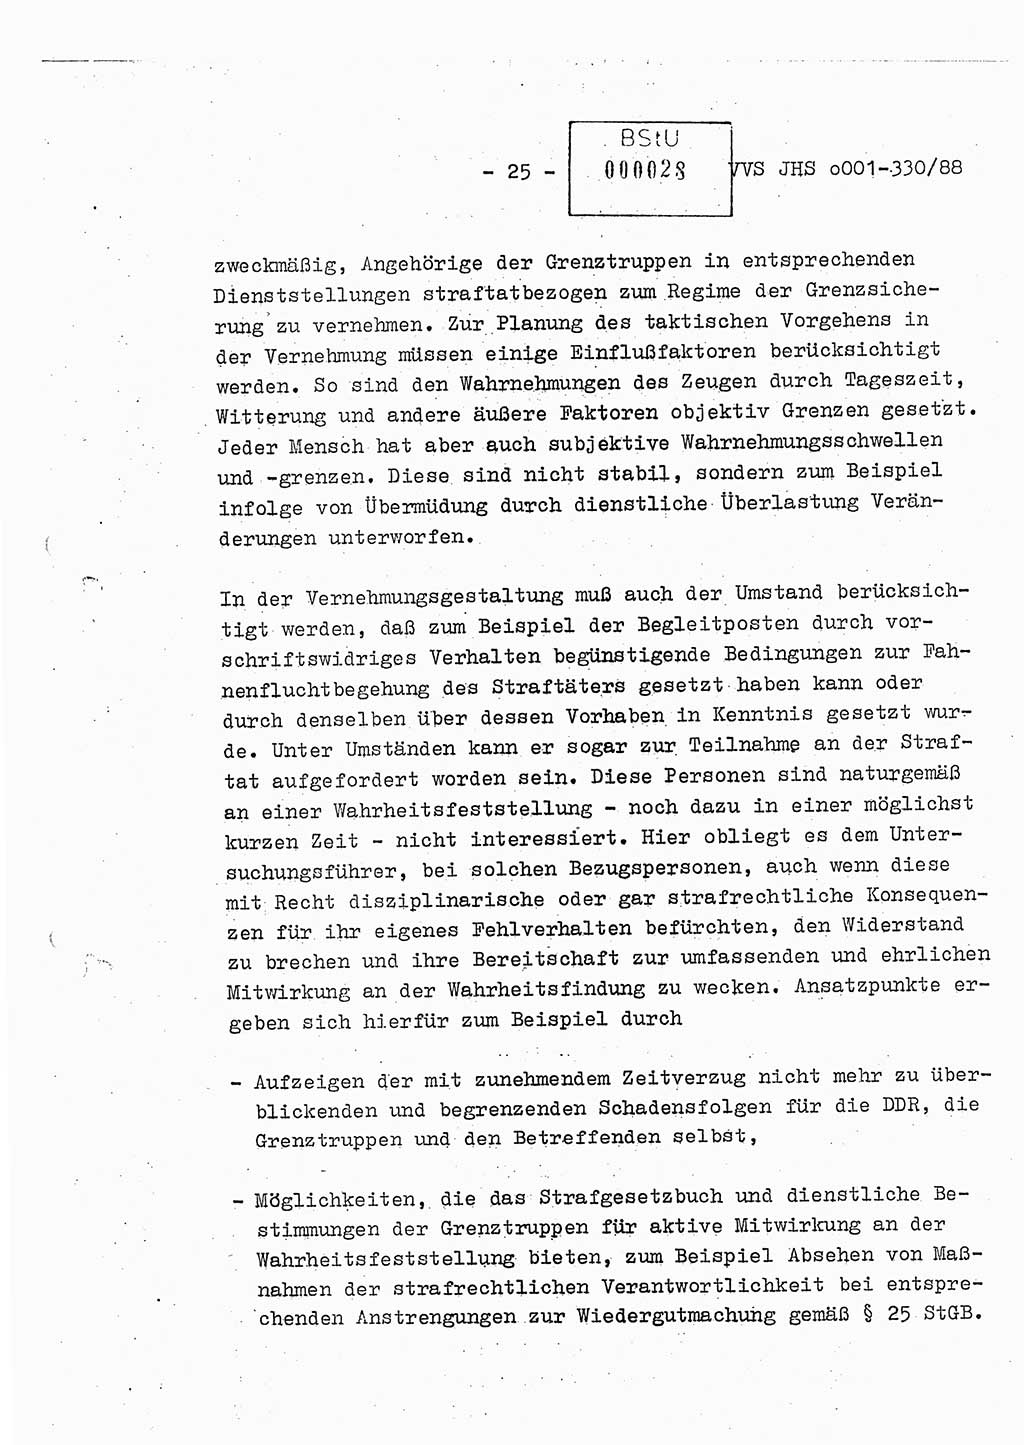 Diplomarbeit Offiziersschüler Thomas Mühle (HA Ⅸ/6), Ministerium für Staatssicherheit (MfS) [Deutsche Demokratische Republik (DDR)], Juristische Hochschule (JHS), Vertrauliche Verschlußsache (VVS) o001-330/88, Potsdam 1988, Seite 25 (Dipl.-Arb. MfS DDR JHS VVS o001-330/88 1988, S. 25)